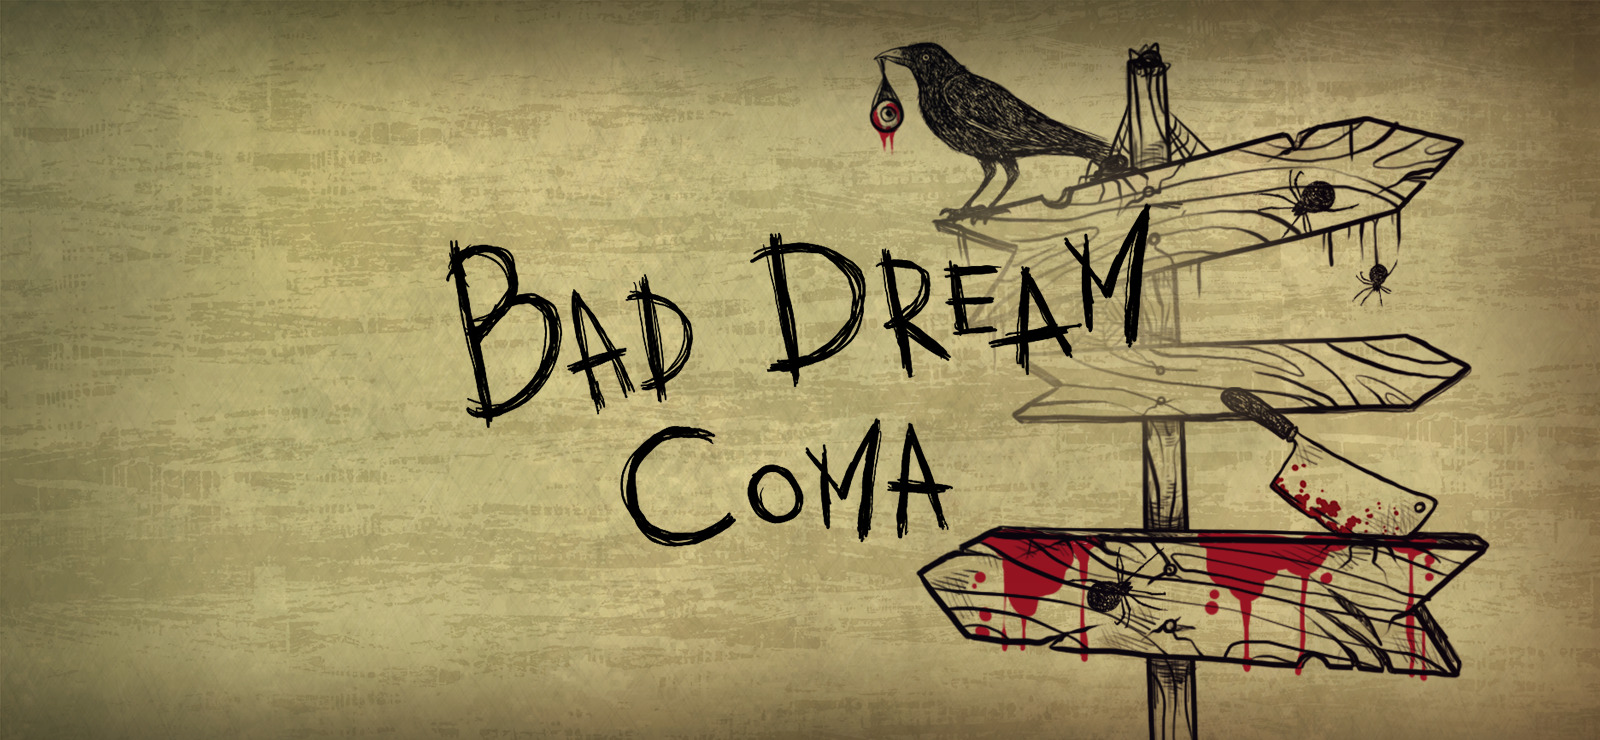 Bad dream coma steam (120) фото